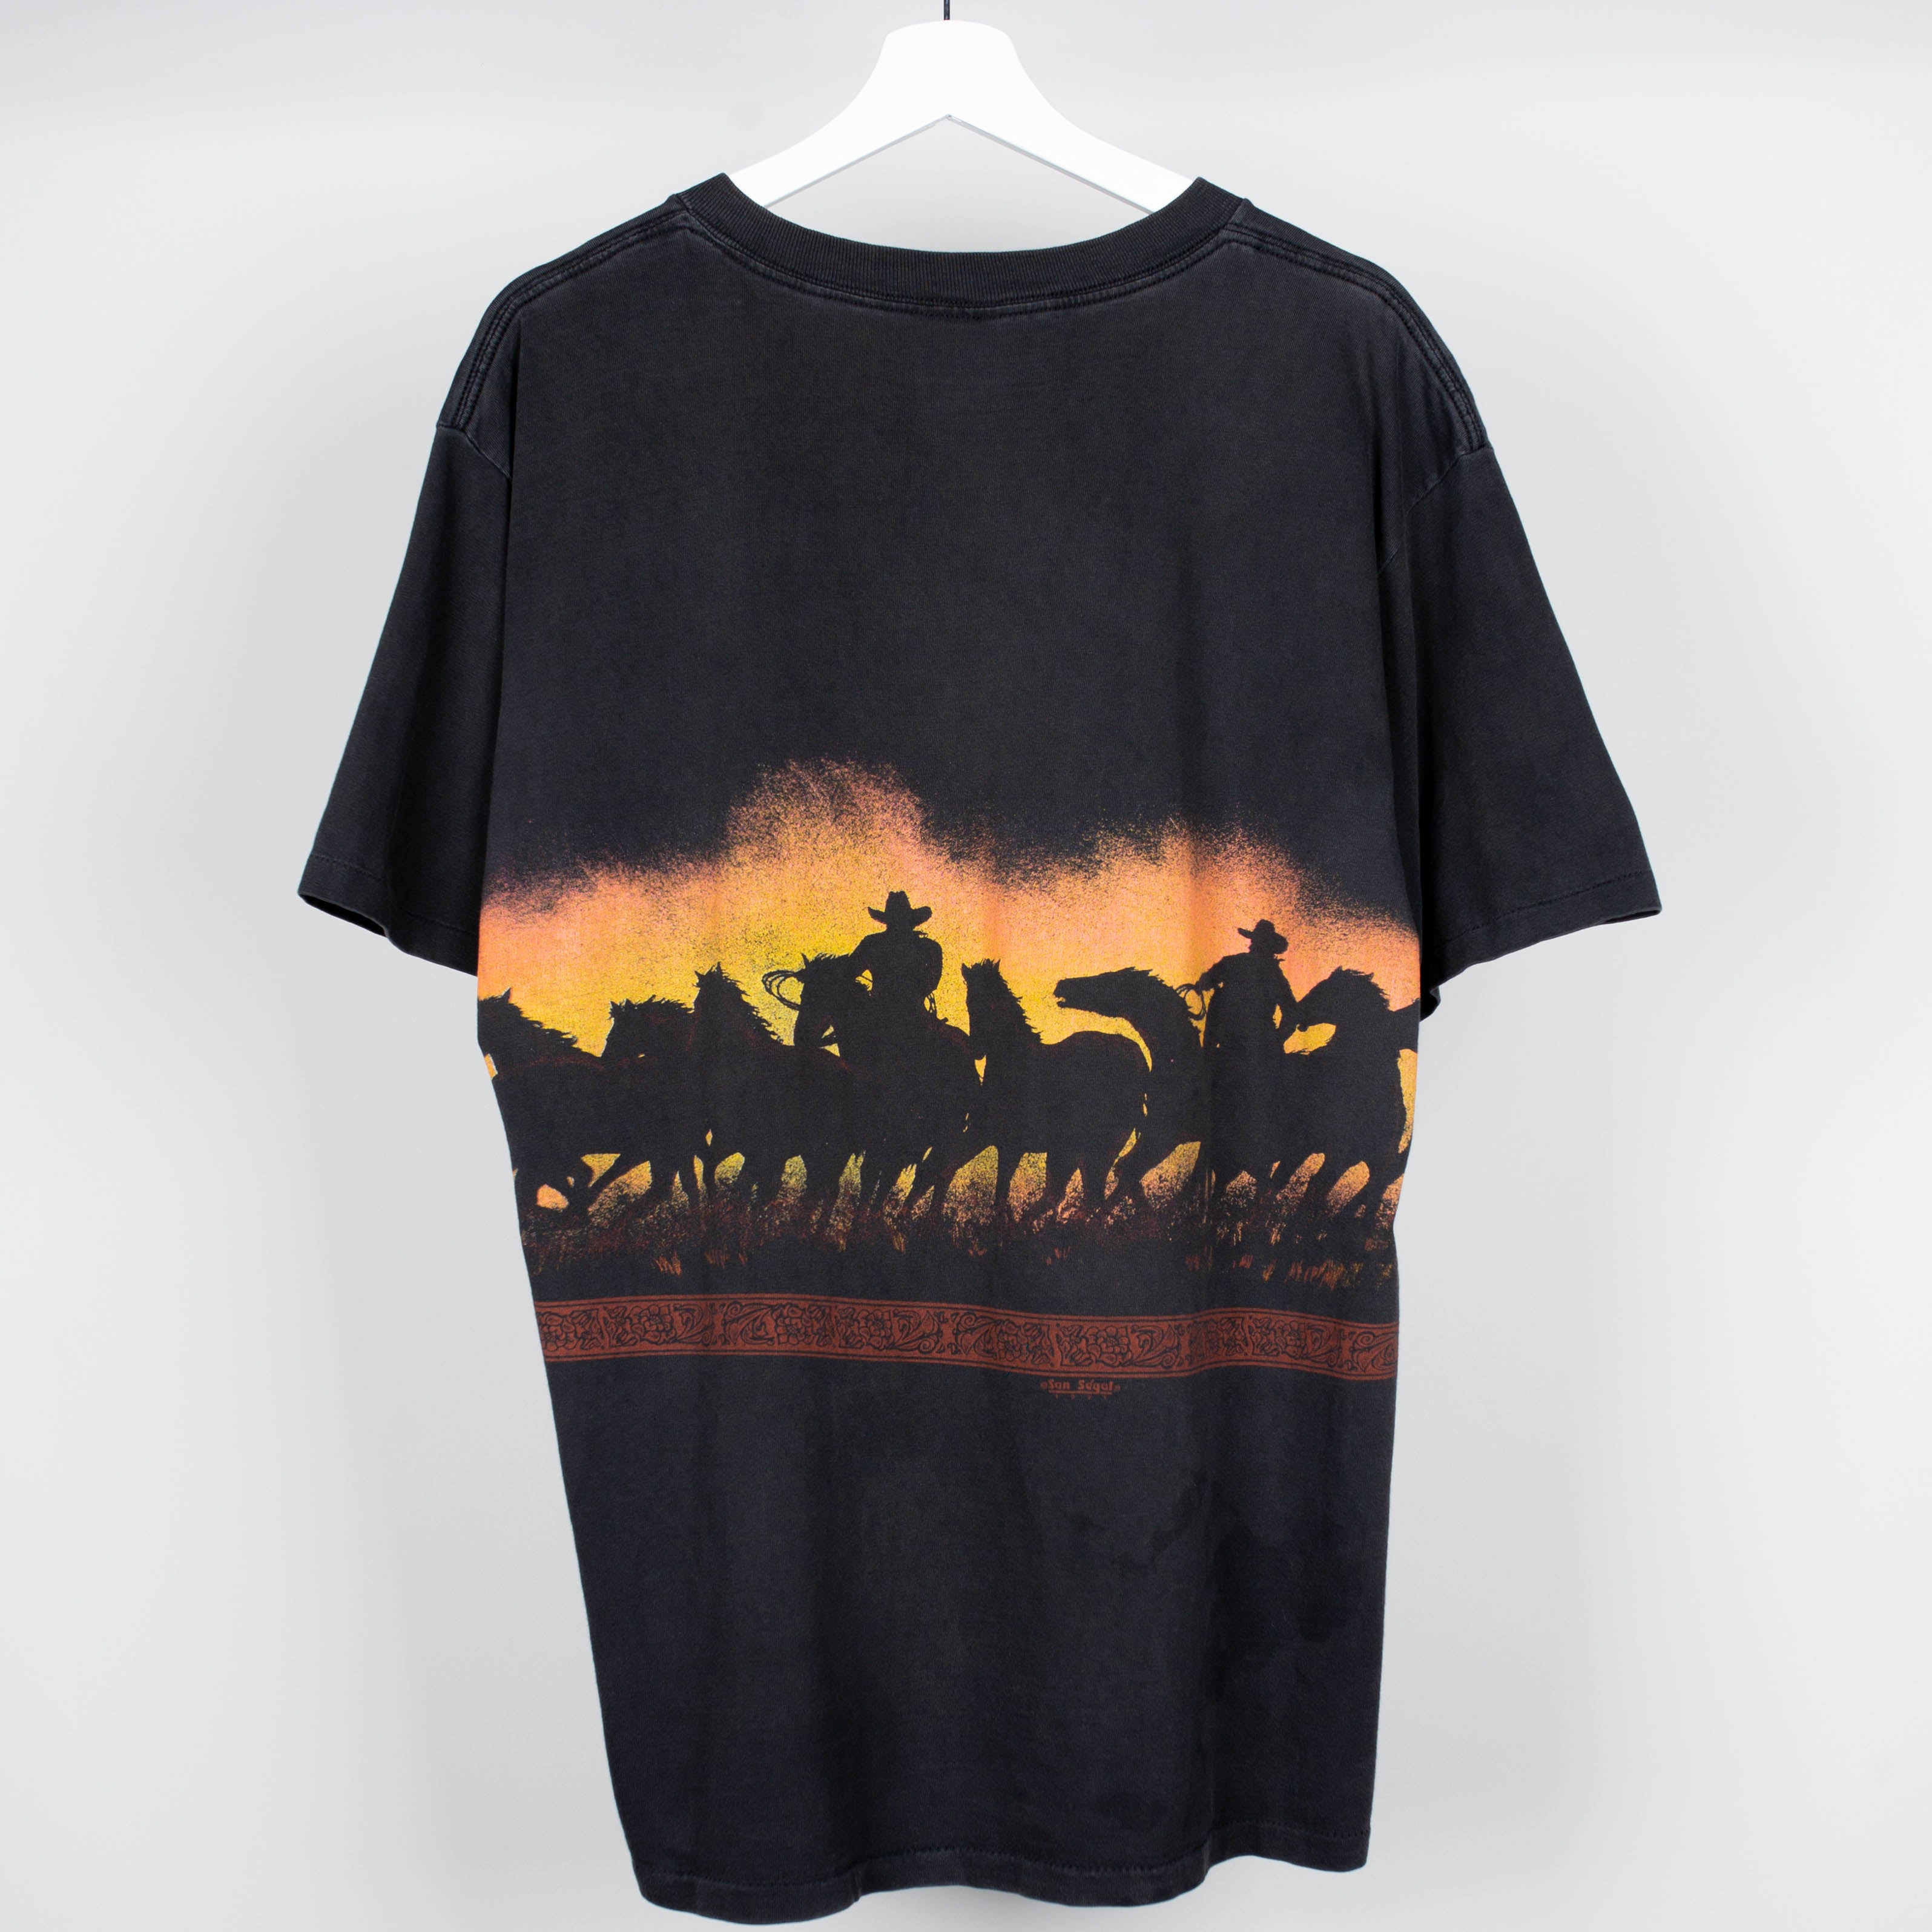 1991 Desert Cowboy silohutte T-Shirt Size XL